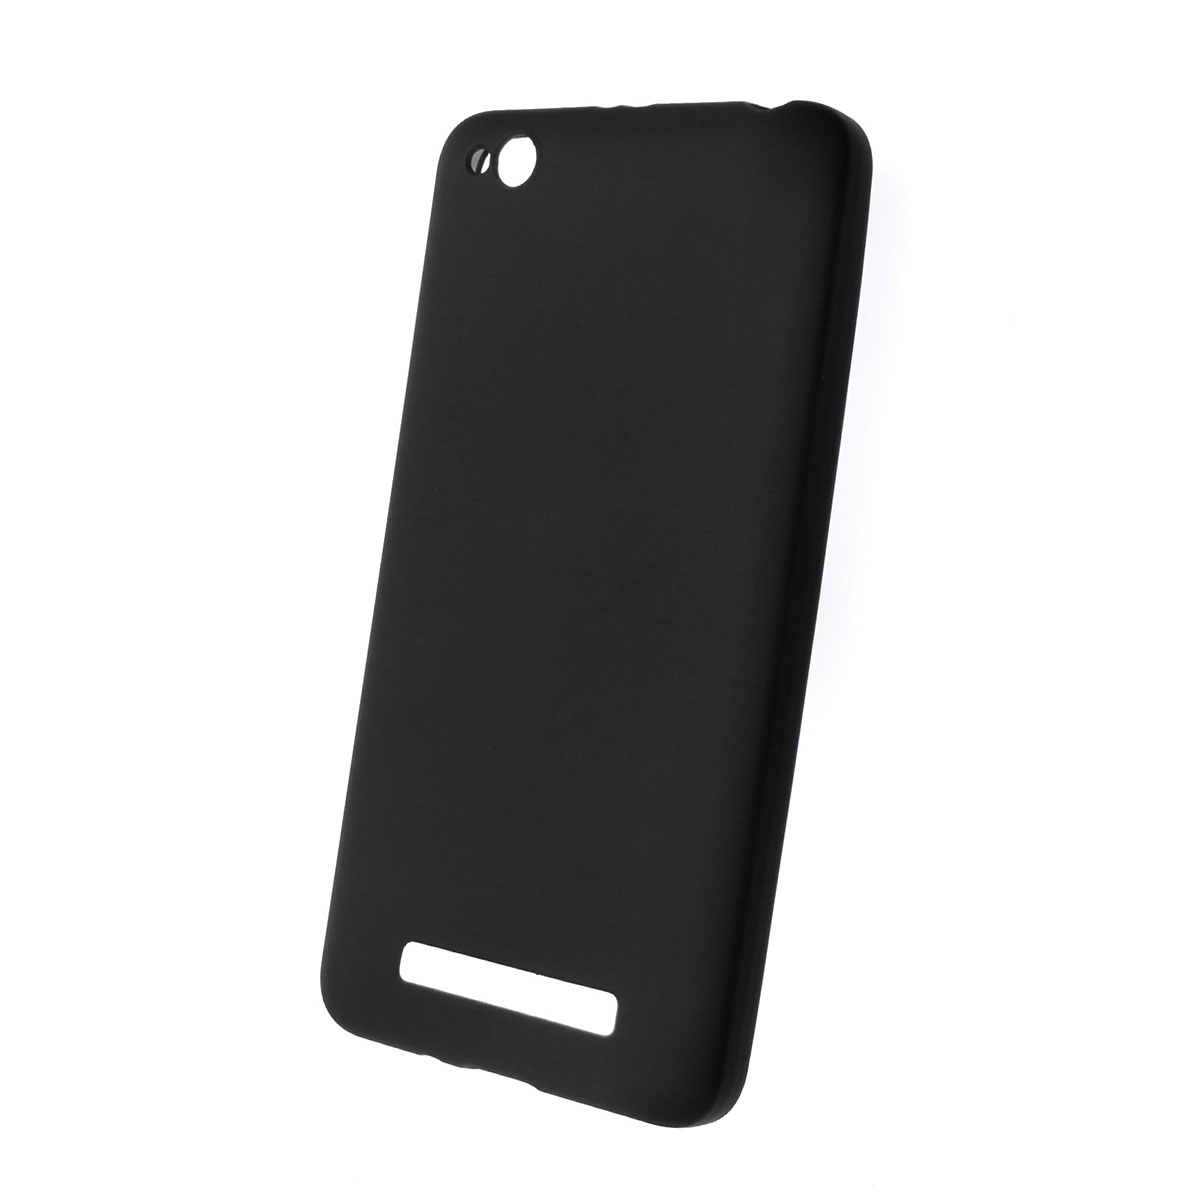 Чехол накладка J-Case THIN для XIAOMI Redmi 4A, силикон, цвет черный.